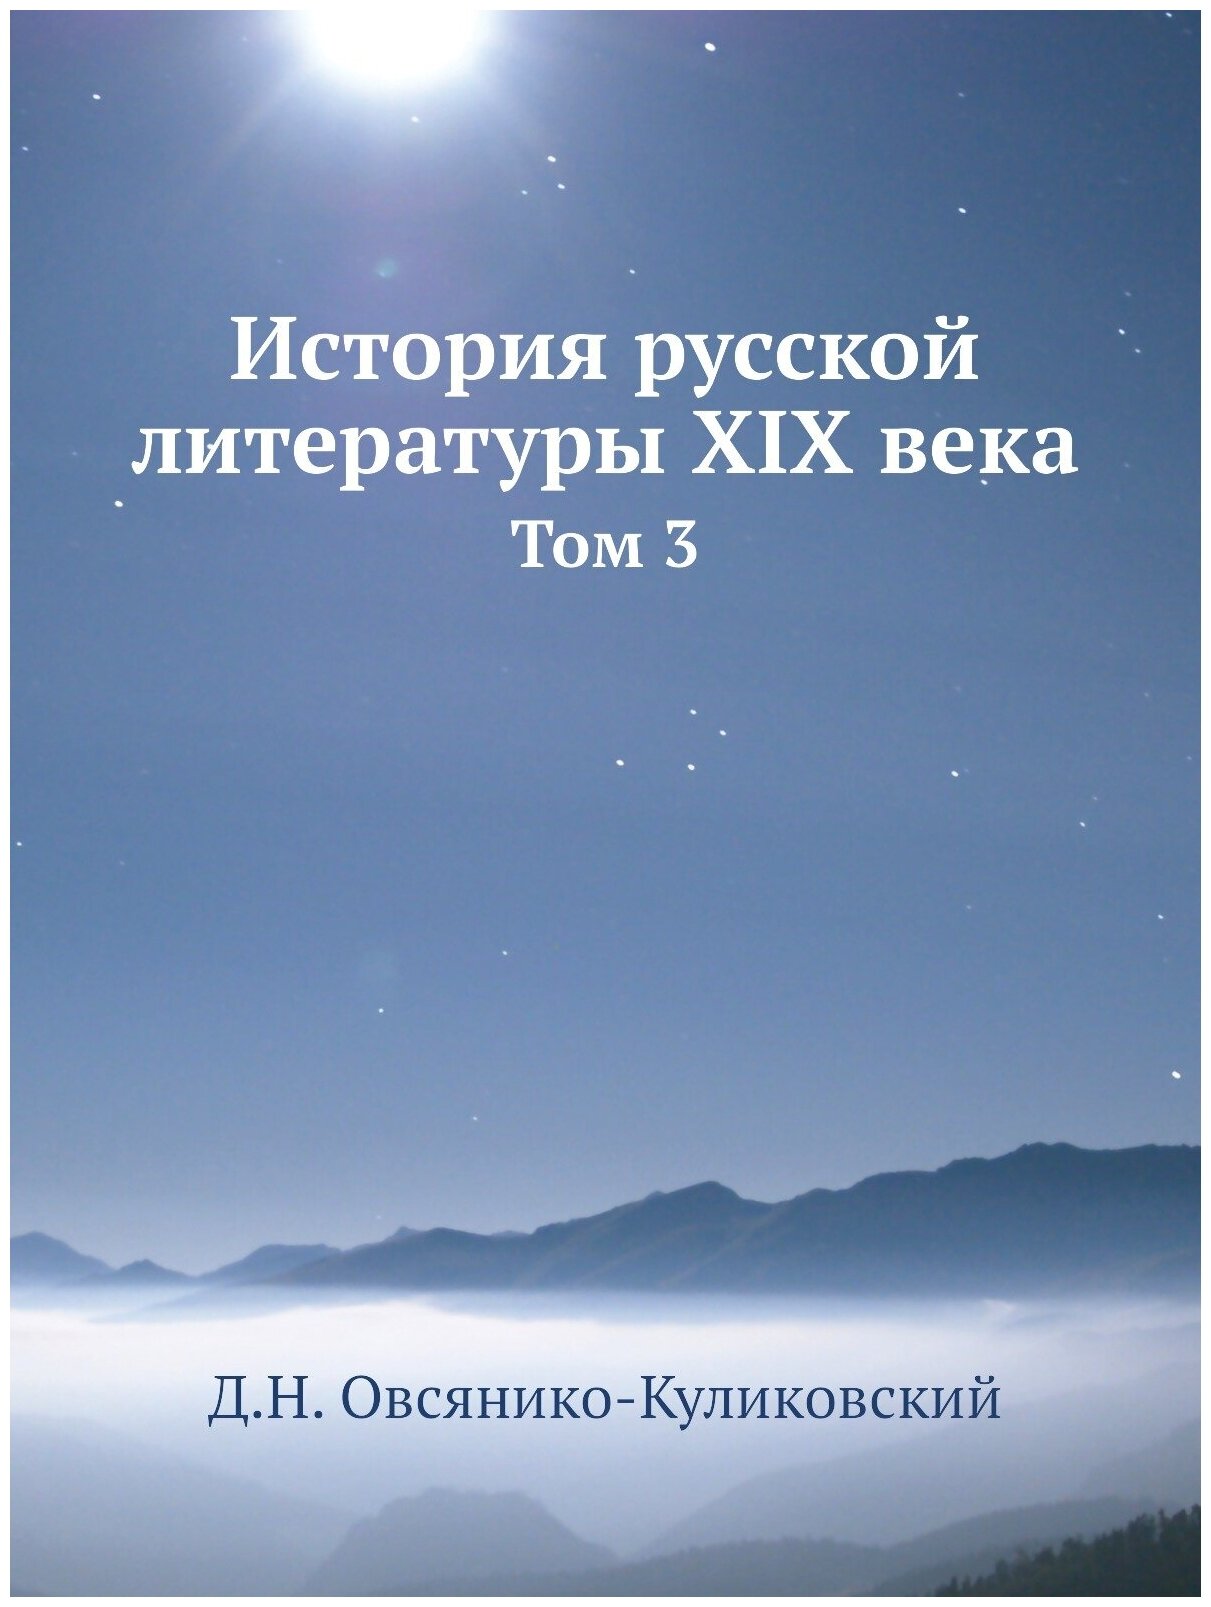 История русской литературы XIX века. Том 3